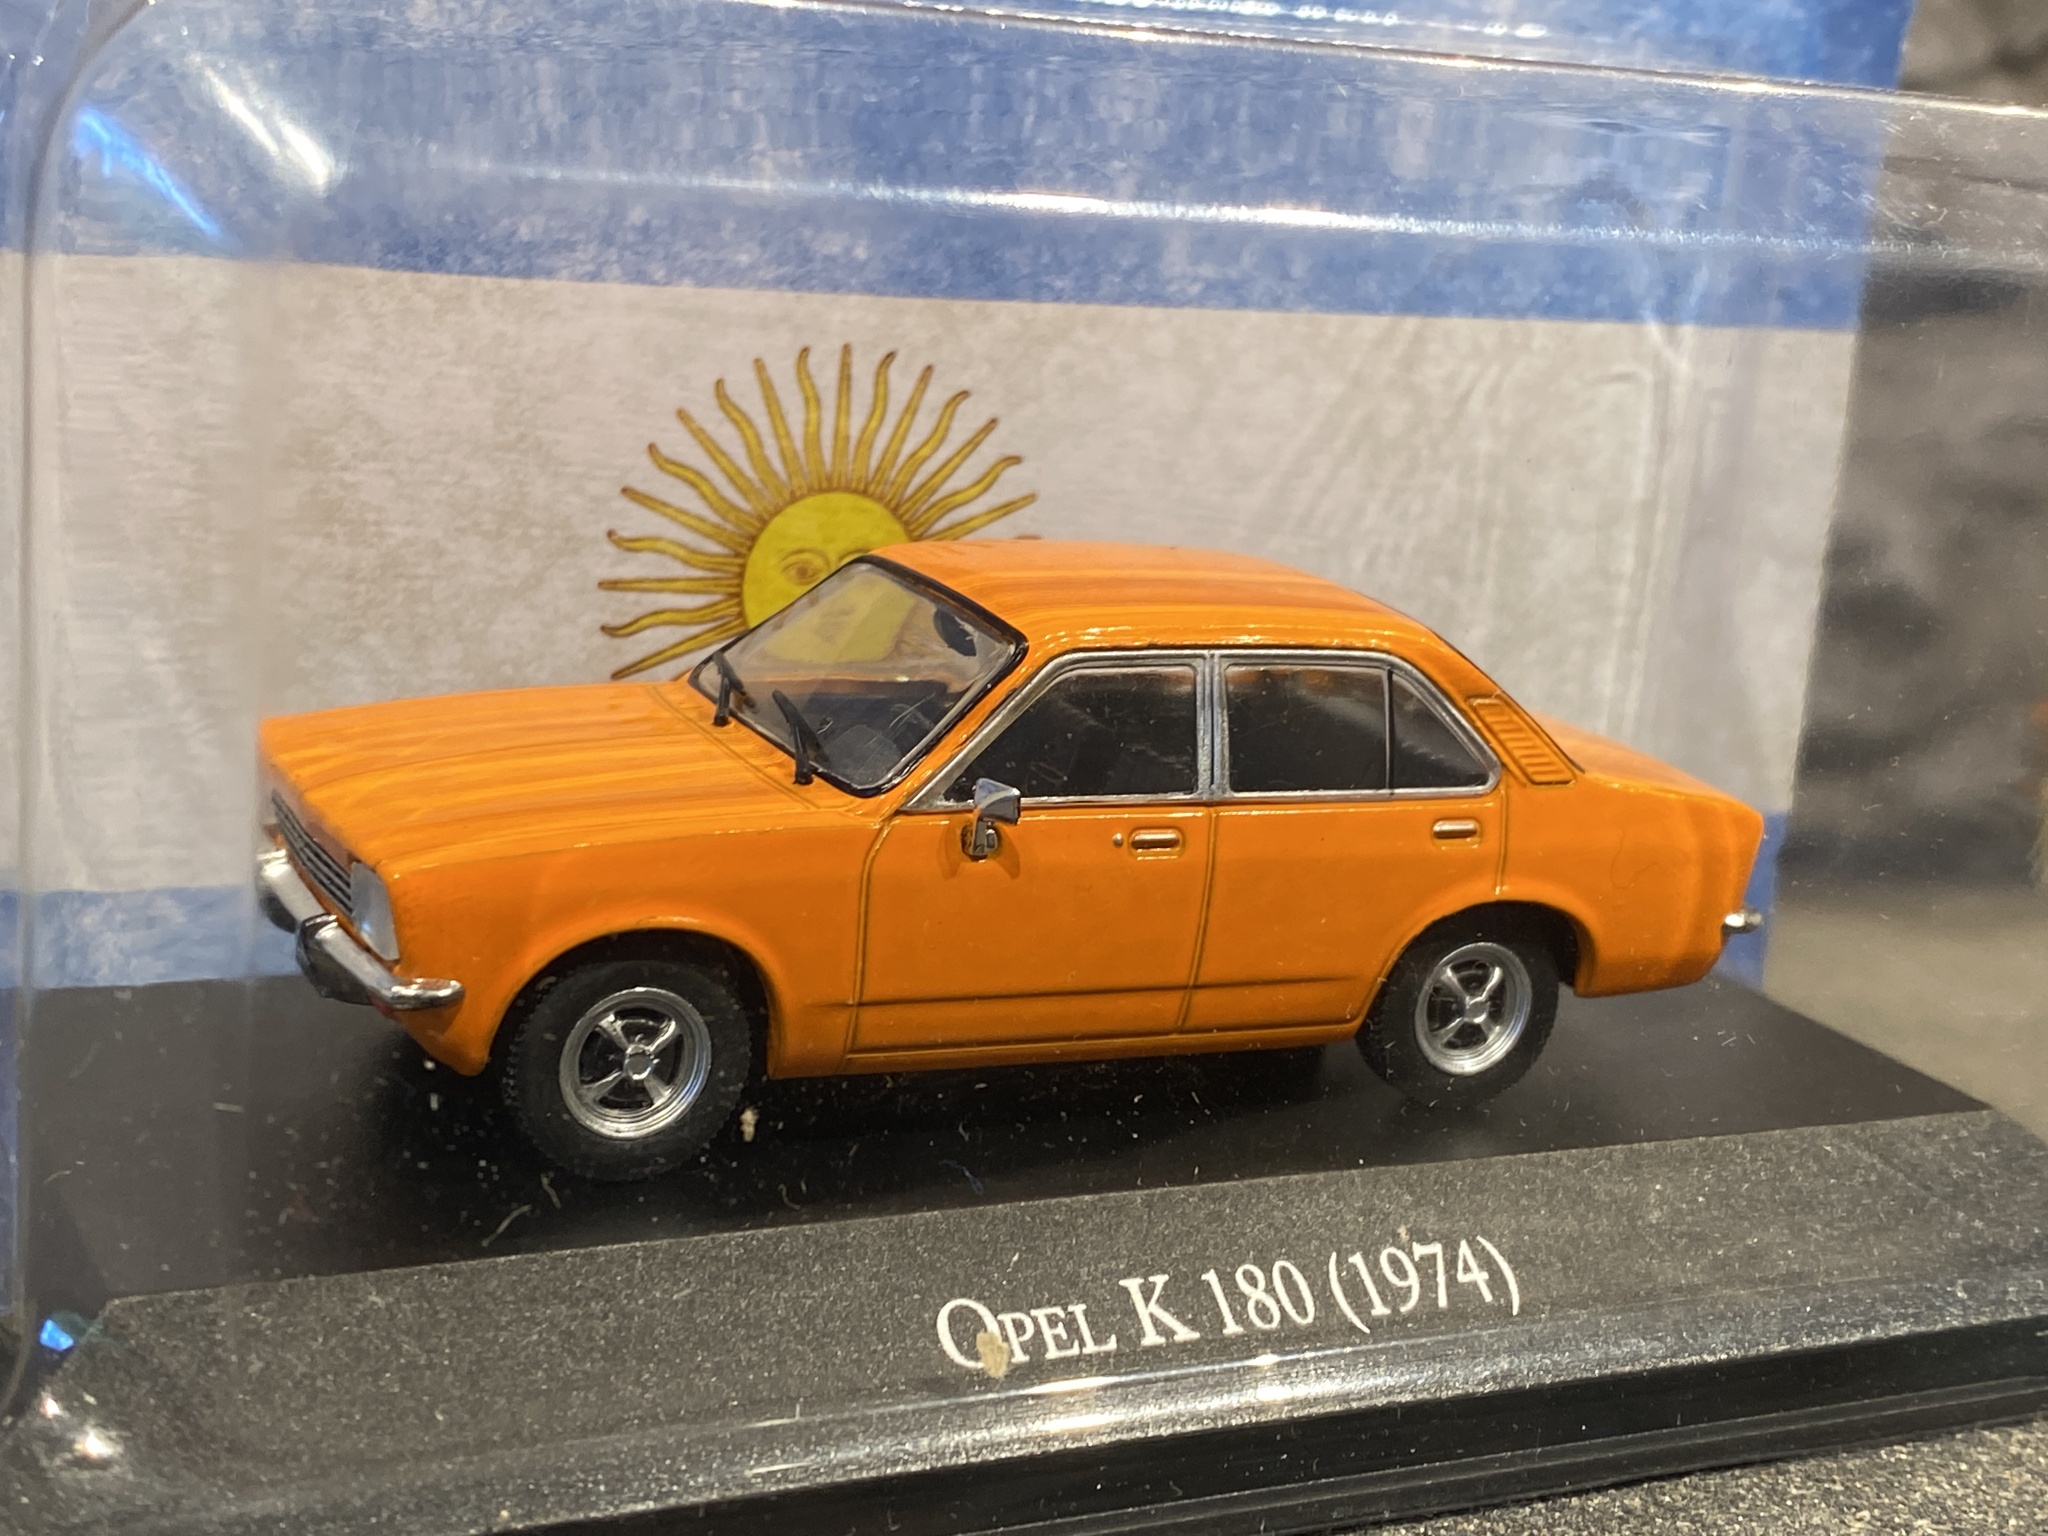 Skala 1/43: Opel k180 Kadett, orange 74' från Rubbo